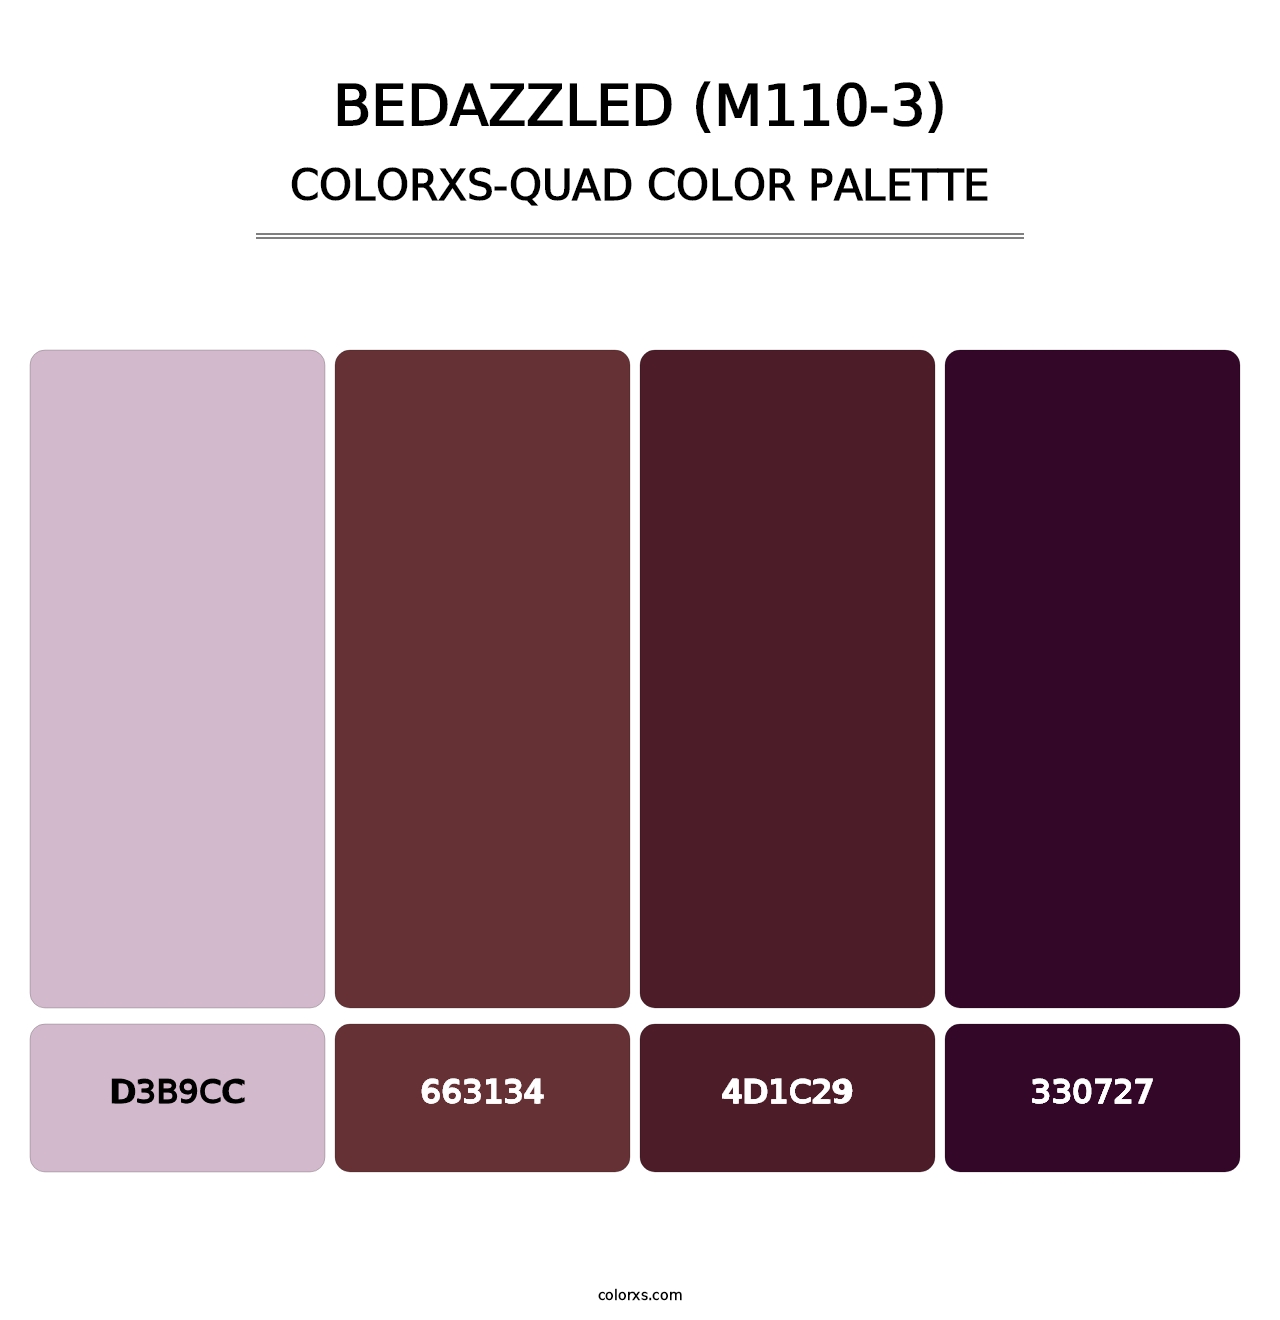 Bedazzled (M110-3) - Colorxs Quad Palette